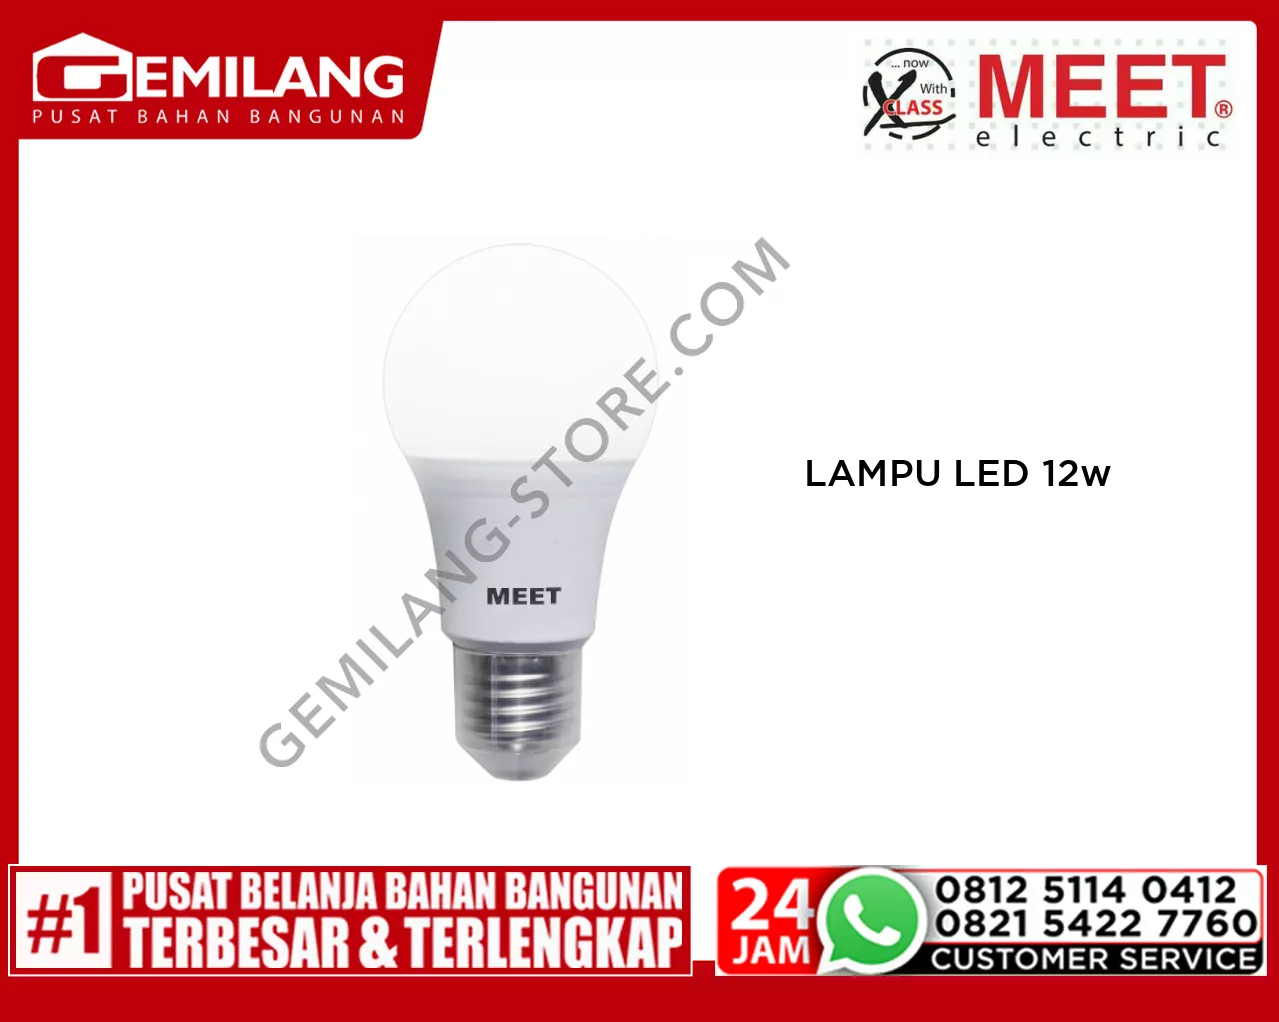 MEET LAMPU LED CLASSIC 12w